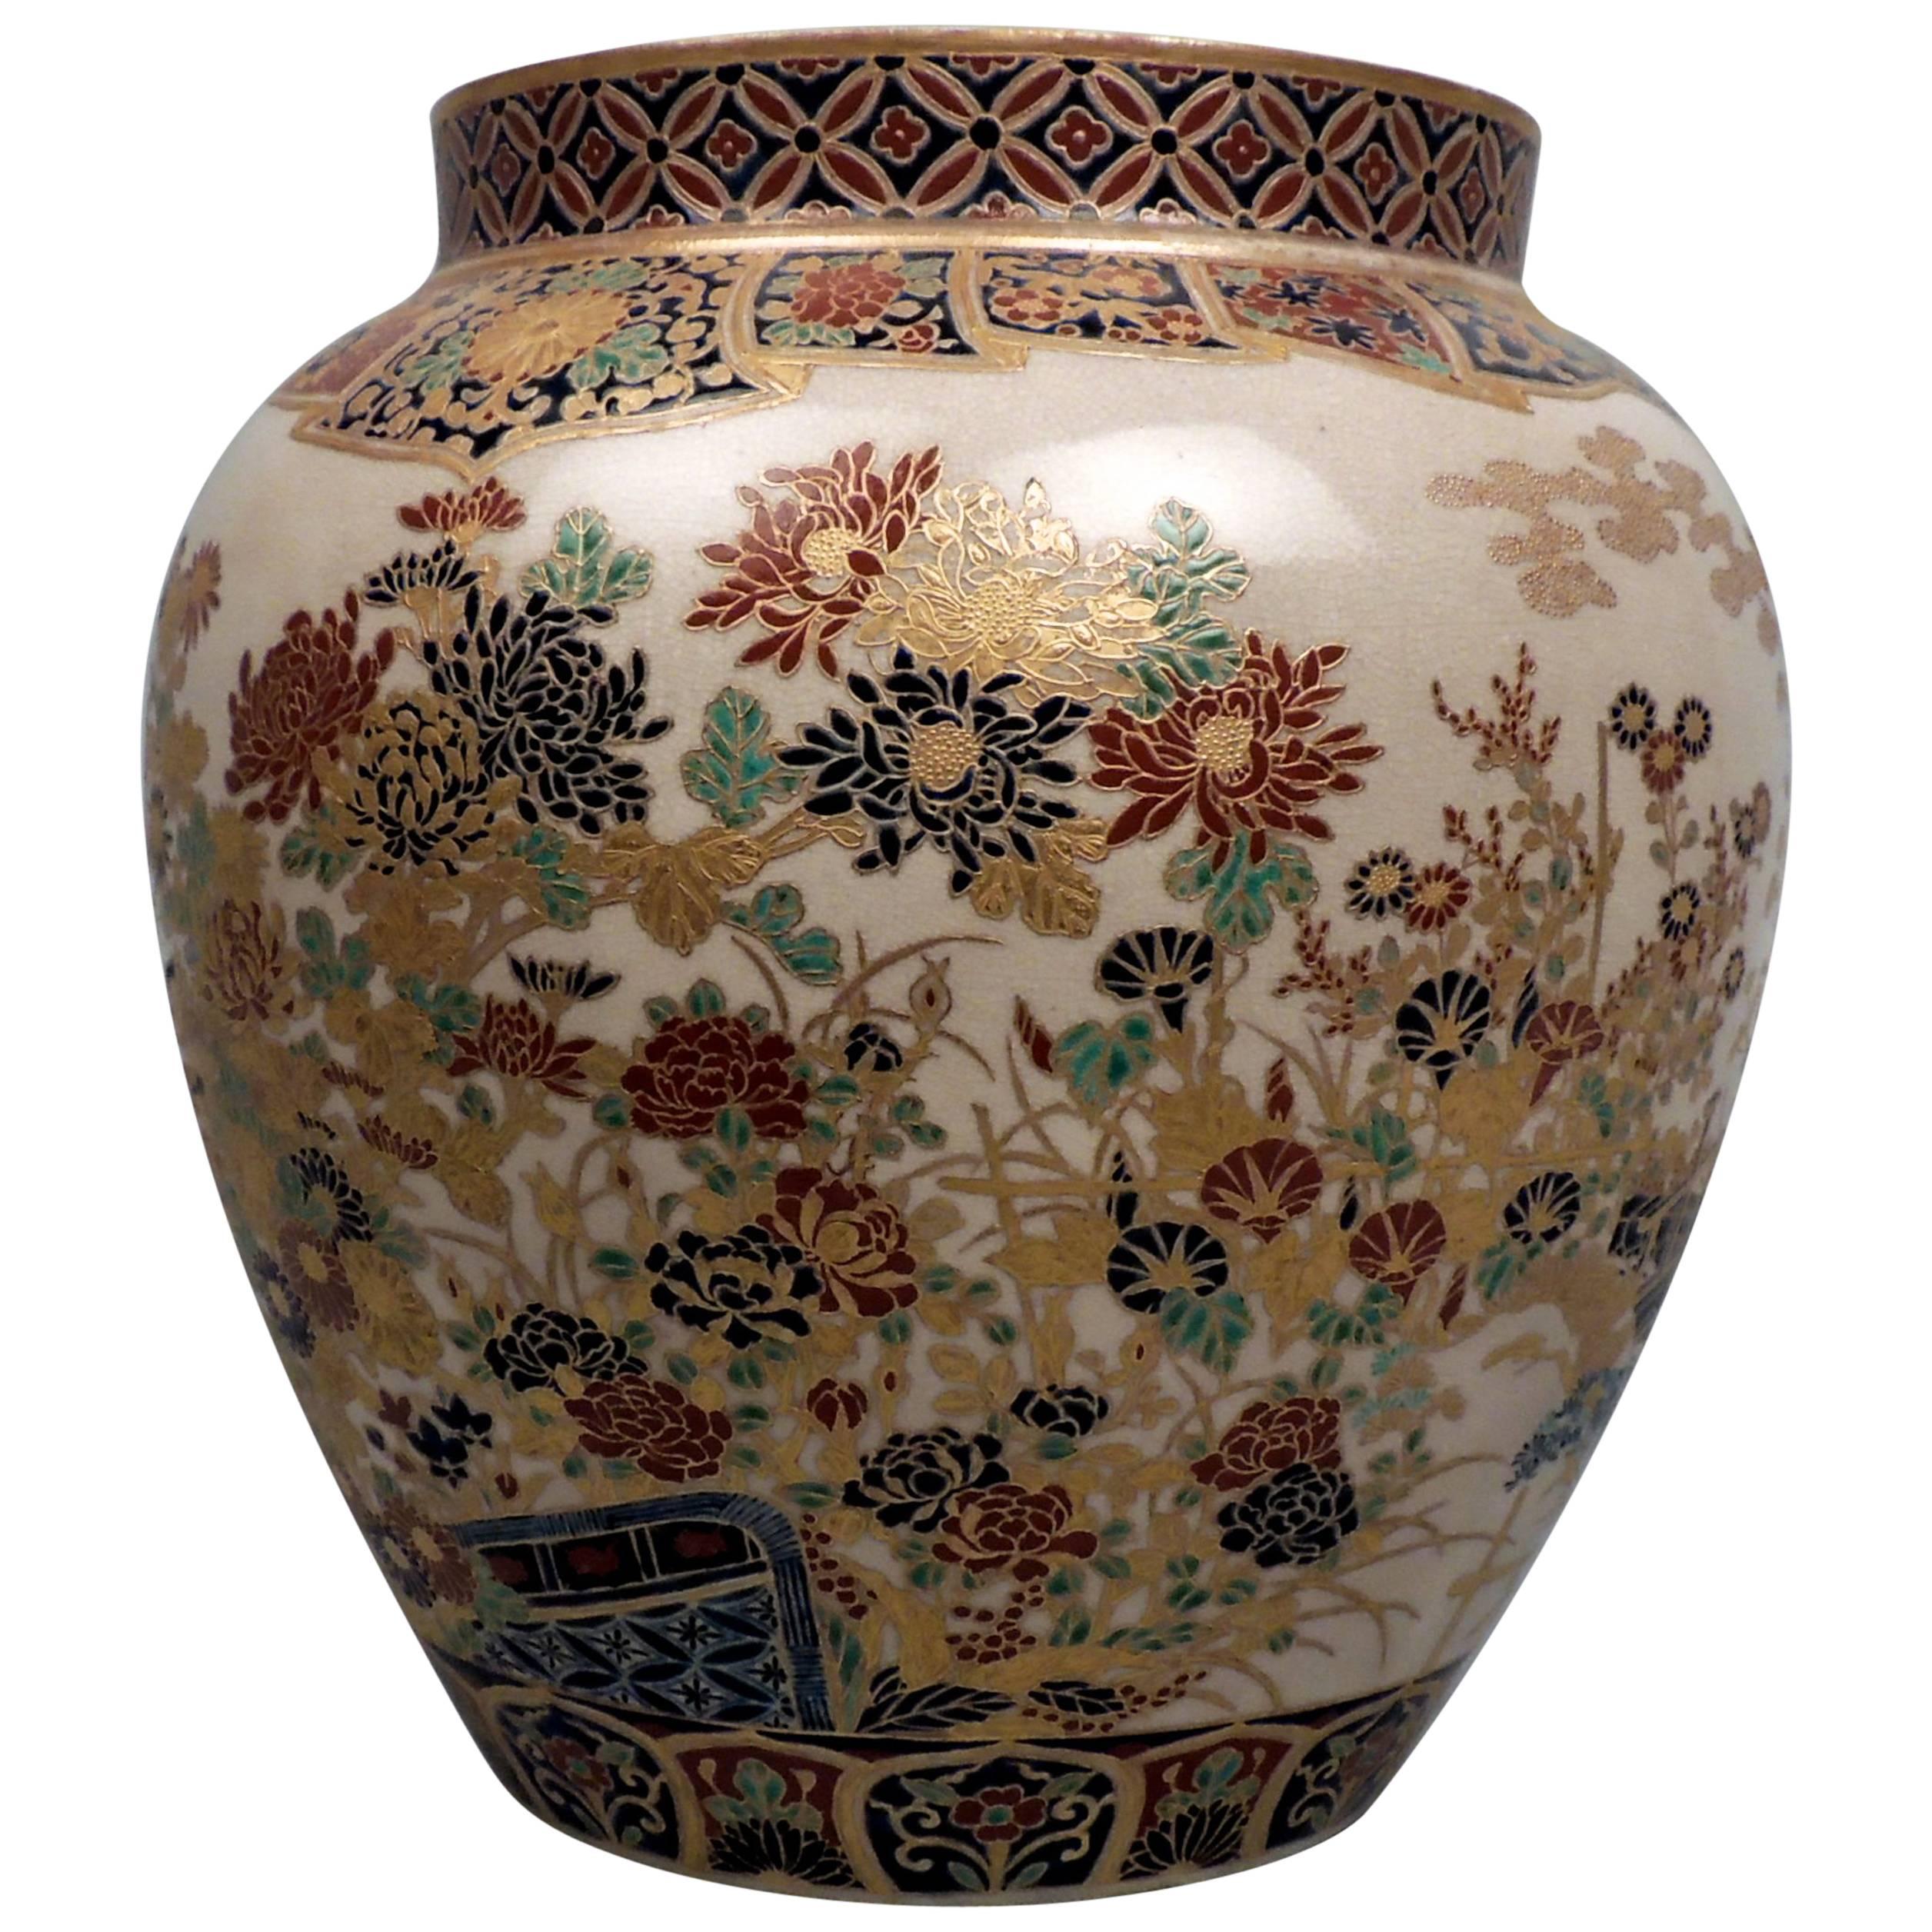 Large 19th Century Signed Japanese Imperial Satsuma Pottery Vase with Gosu Blue